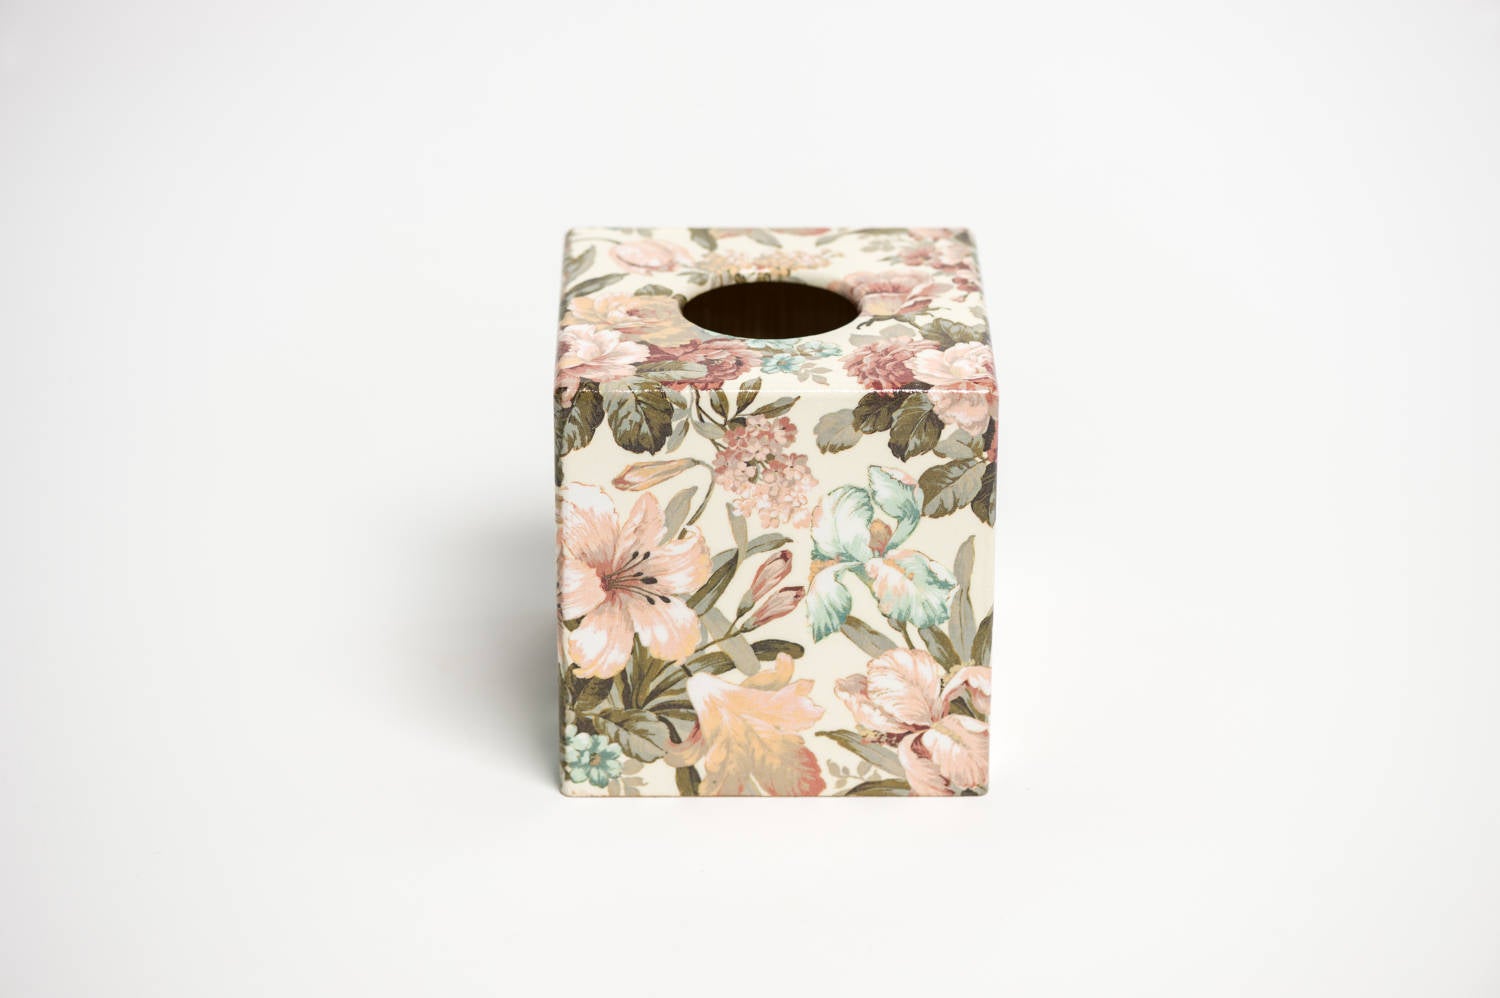 Kate Tissue Box Cover wooden - Handmade